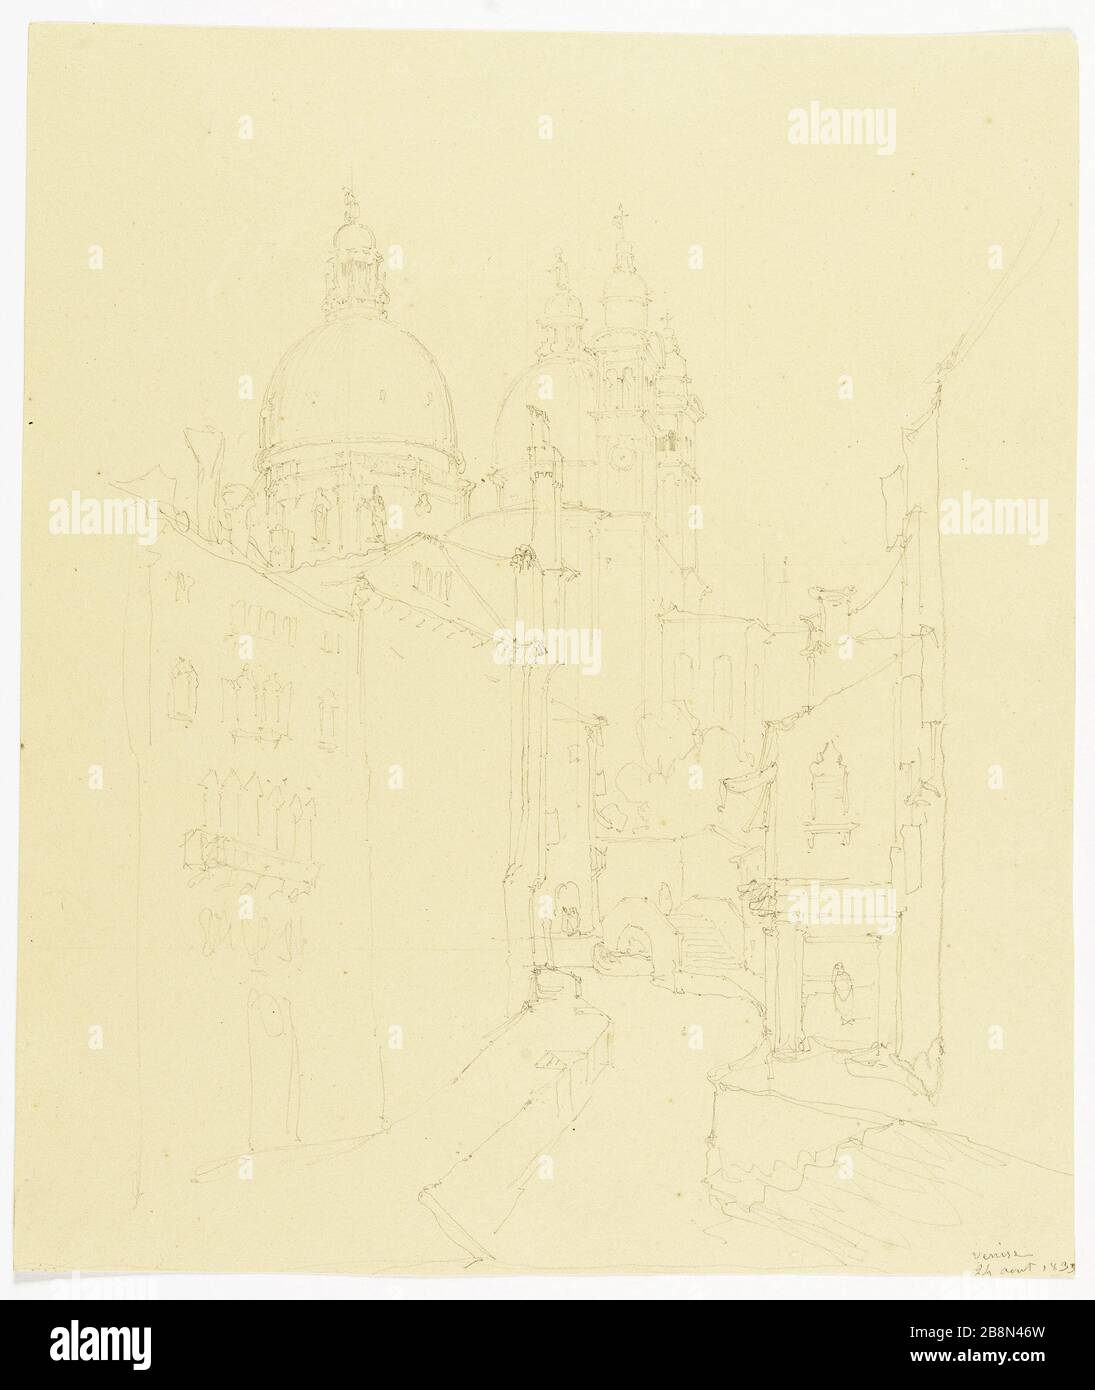 View of Venice and Santa Maria della Salute René Marjolin (1812-1895). Vue de Venise et de Santa Maria della Salute (Italie). Crayon graphite sur papier beige, 24 août 1833. Paris, musée de la Vie romantique. Stock Photo